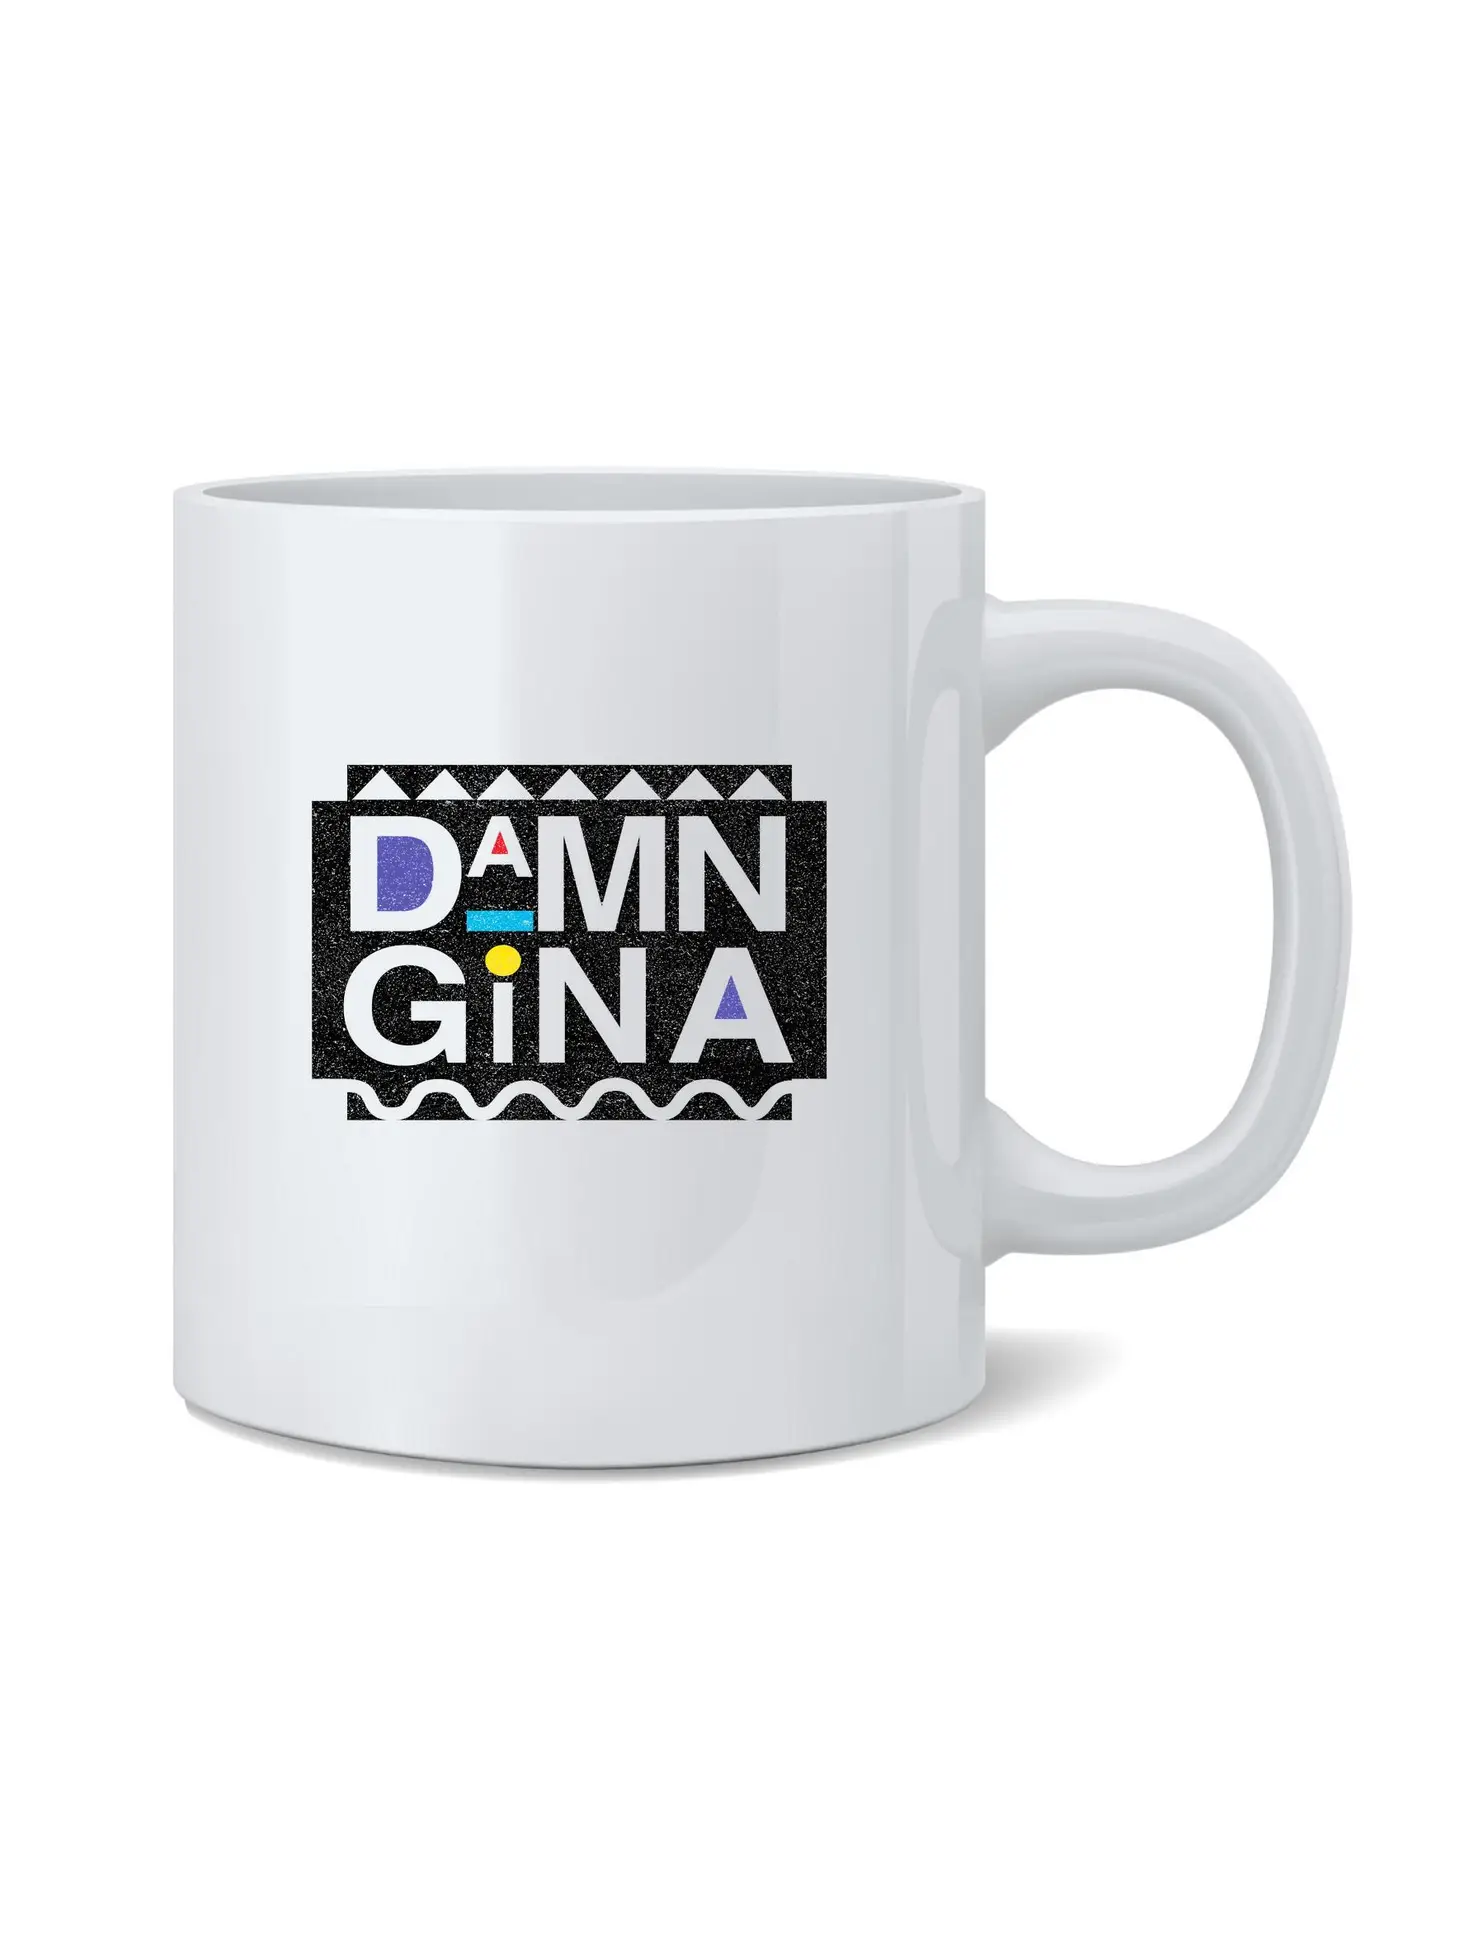 Damn Gina Coffee Mug